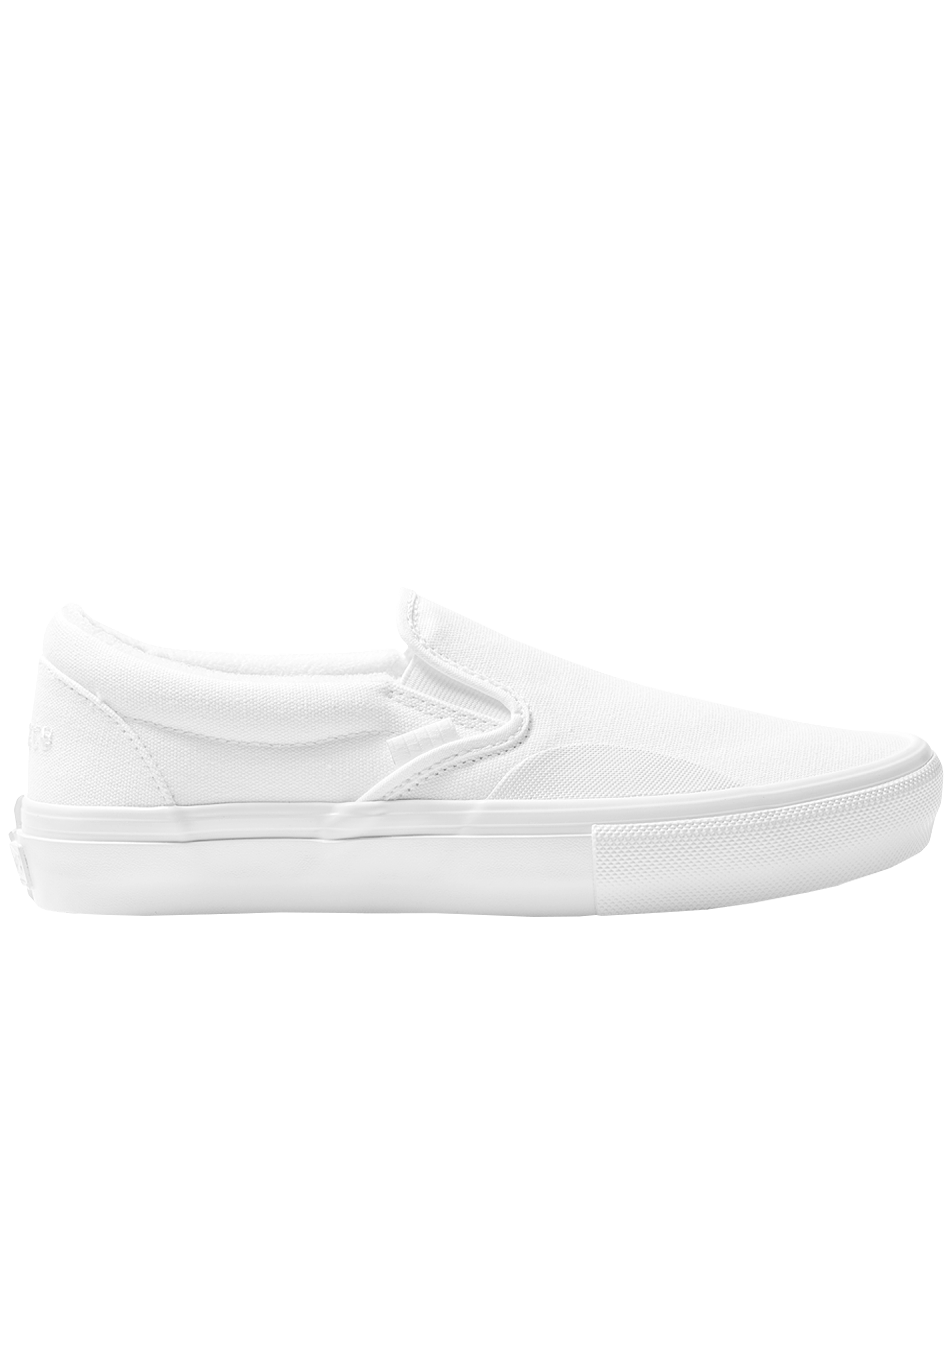 Vans Skate x LovenSkate Skate Slip-On Shoe White ONLINE ONLY